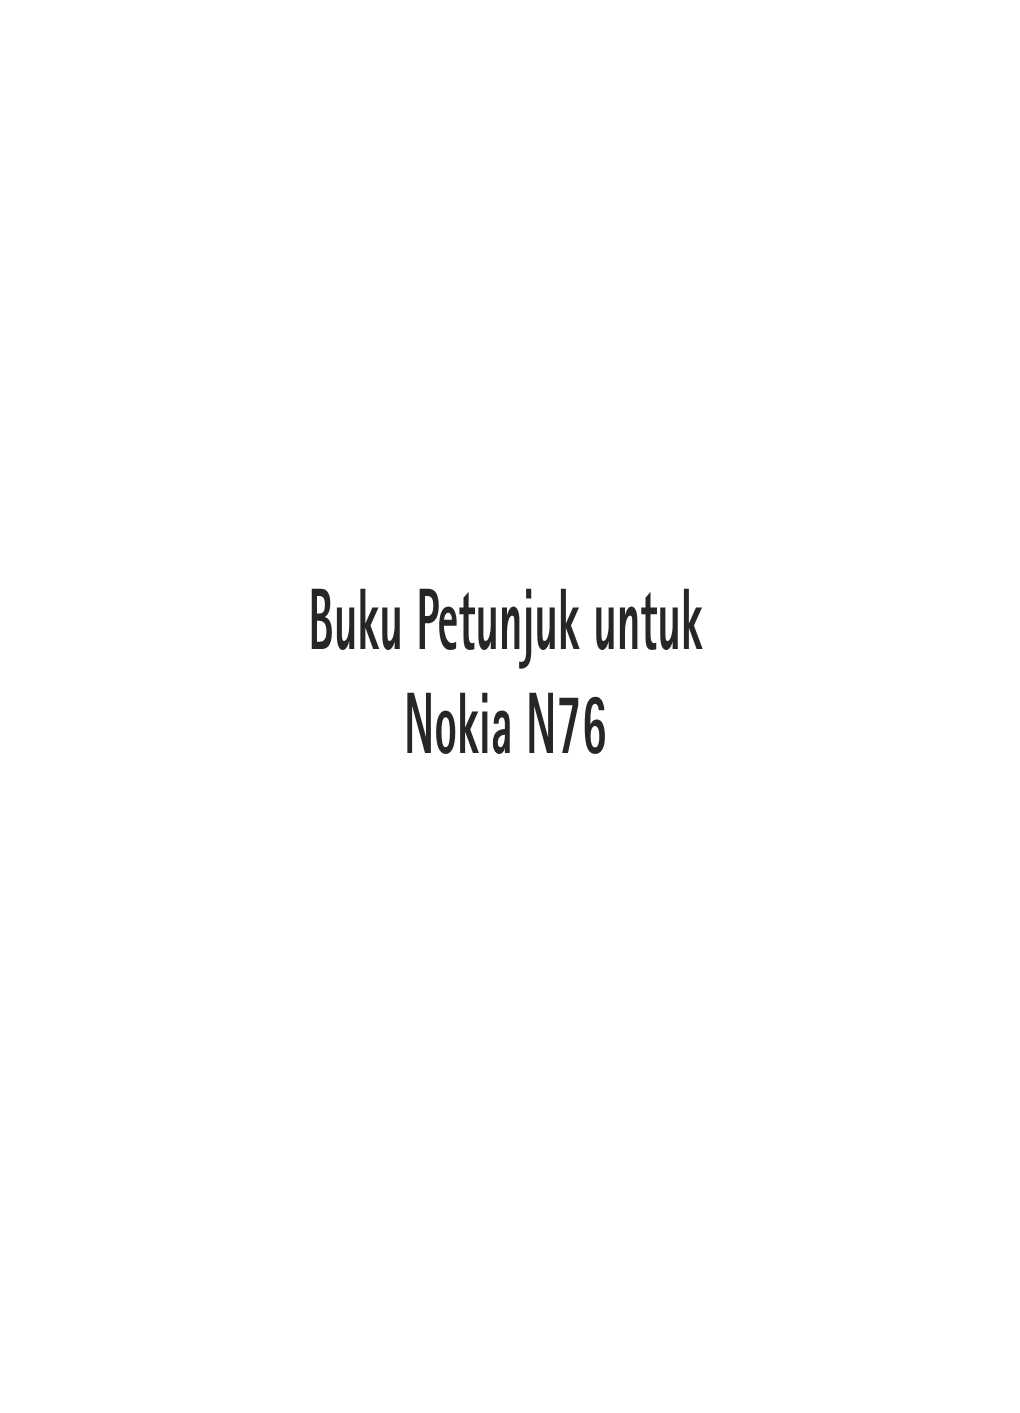 Buku Petunjuk Untuk Nokia PC Nseries Suite Pada Olahpesan Dari Pusat Pesan Multimedia